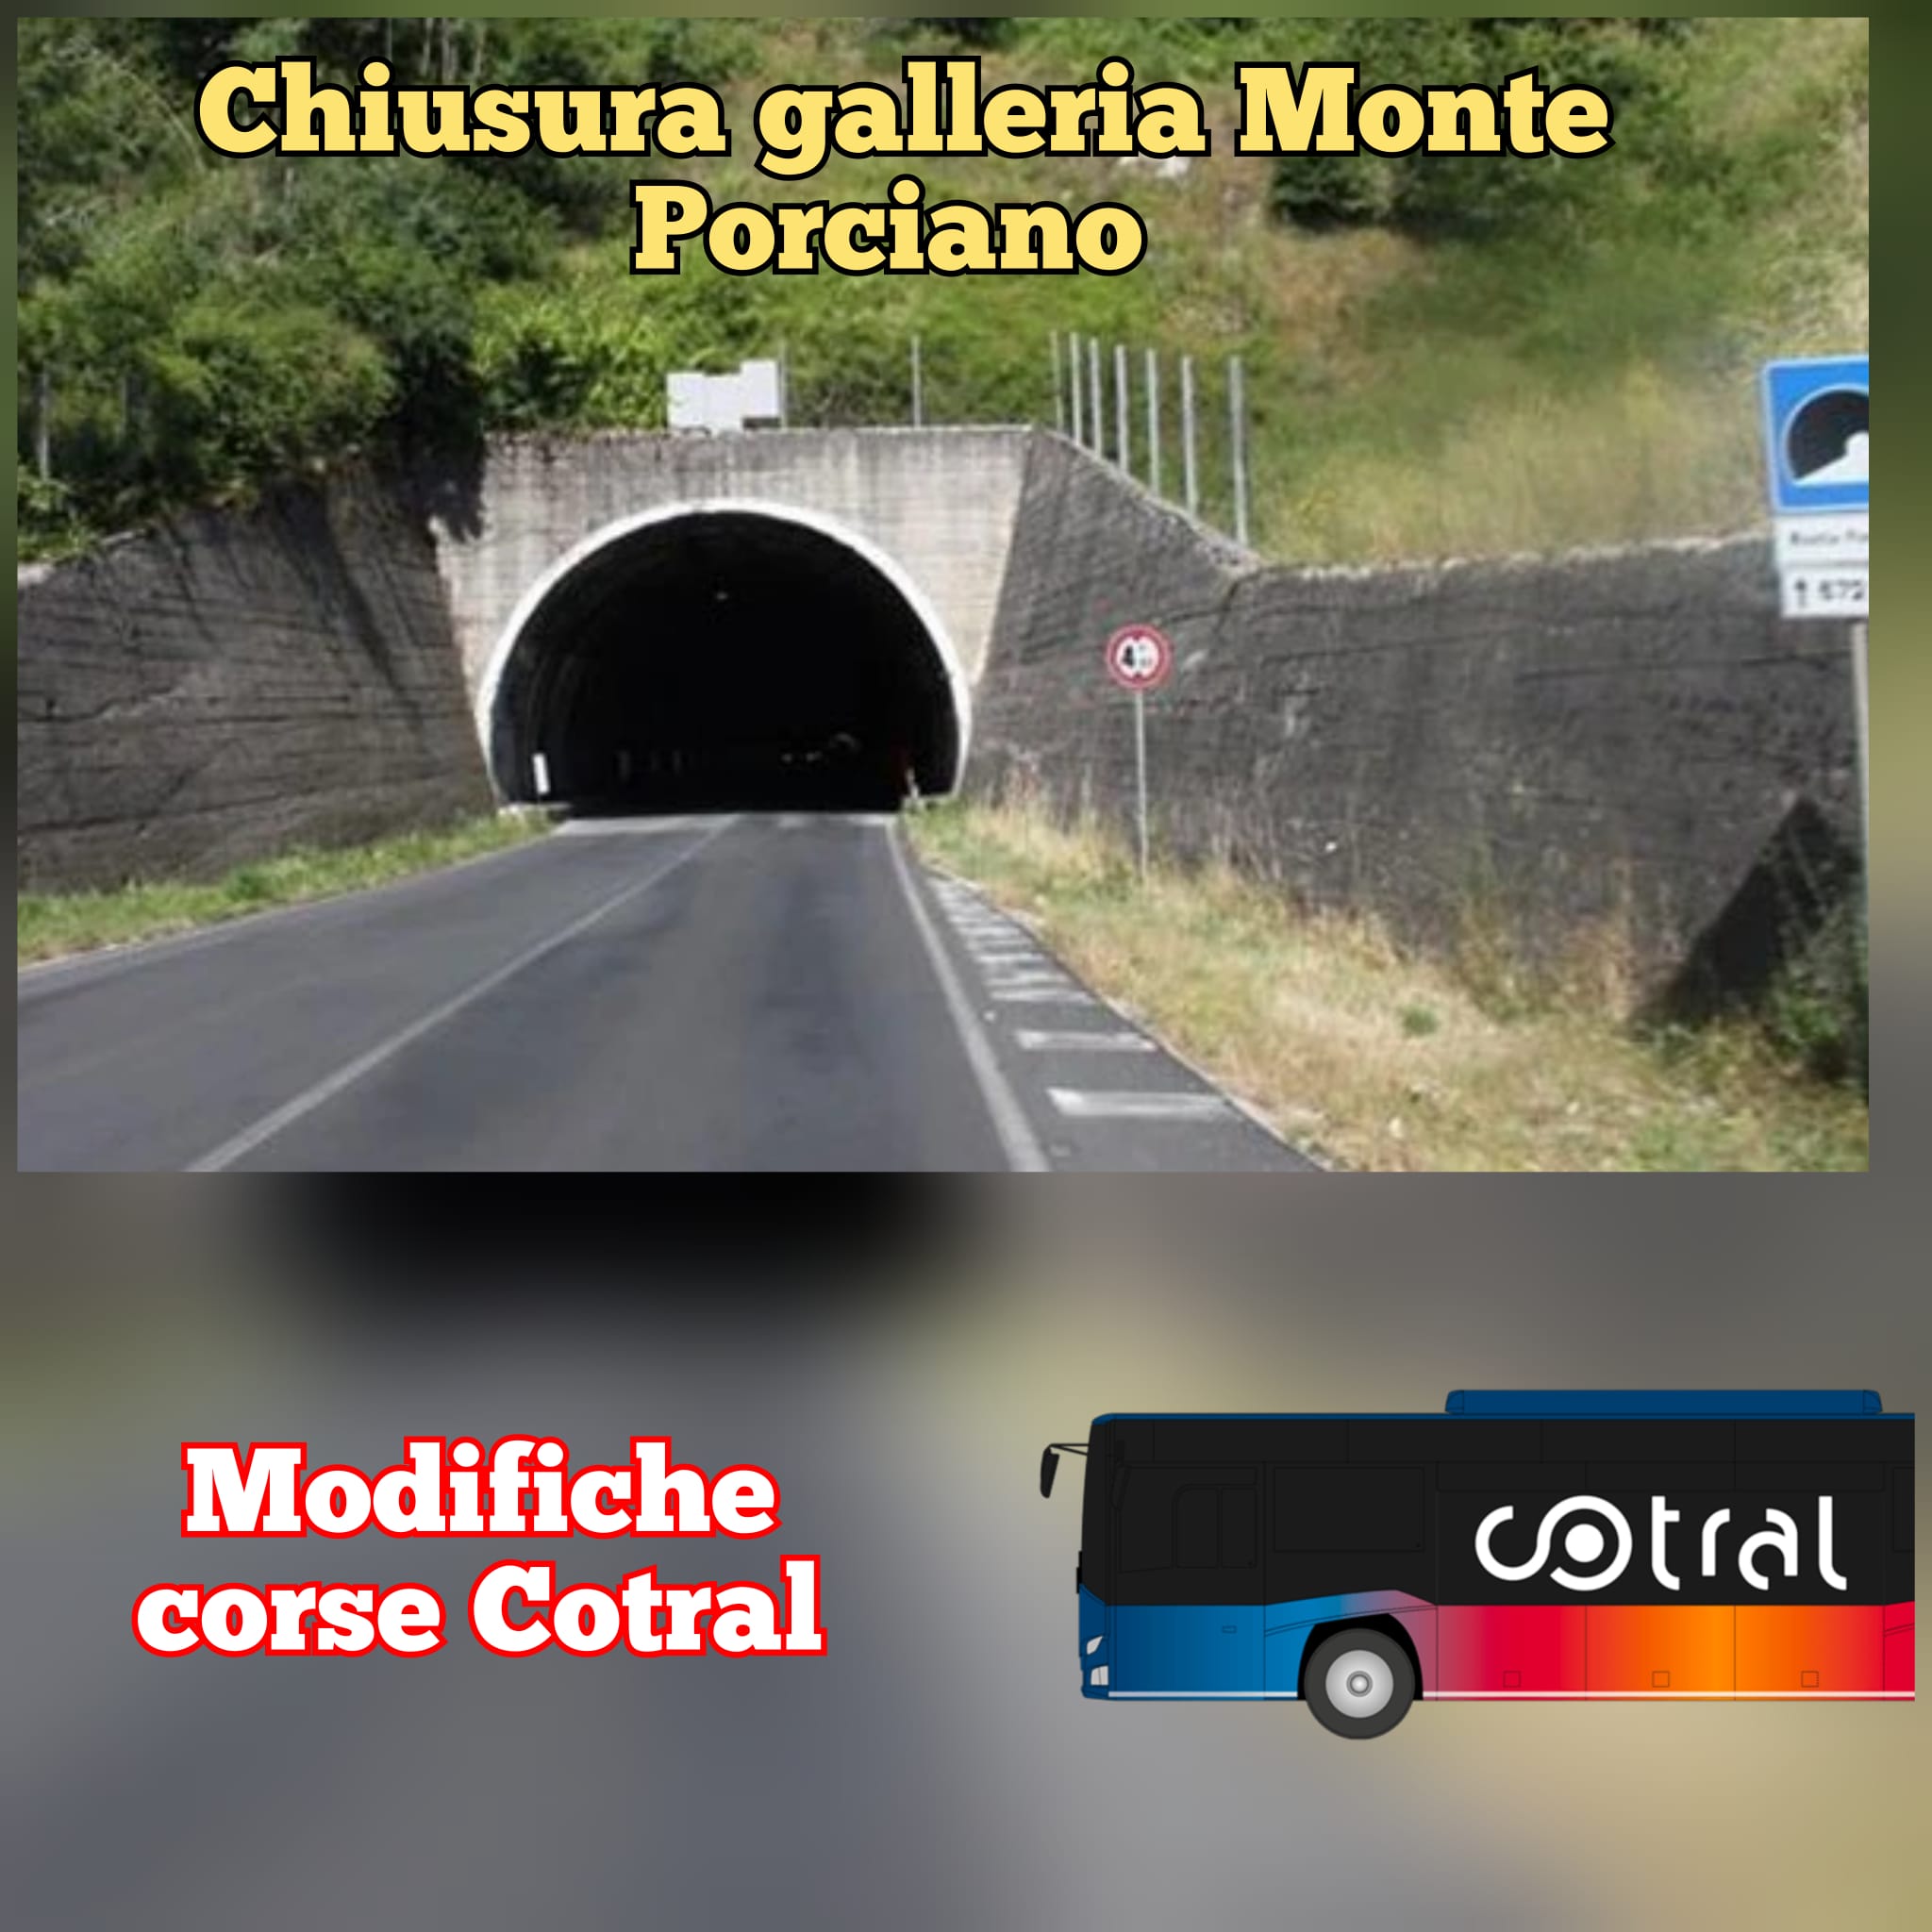 CHIUSURA GALLERIA MONTE PORCIANO - MODIFICHE COTRAL DALL'8 GENNAIO 2023